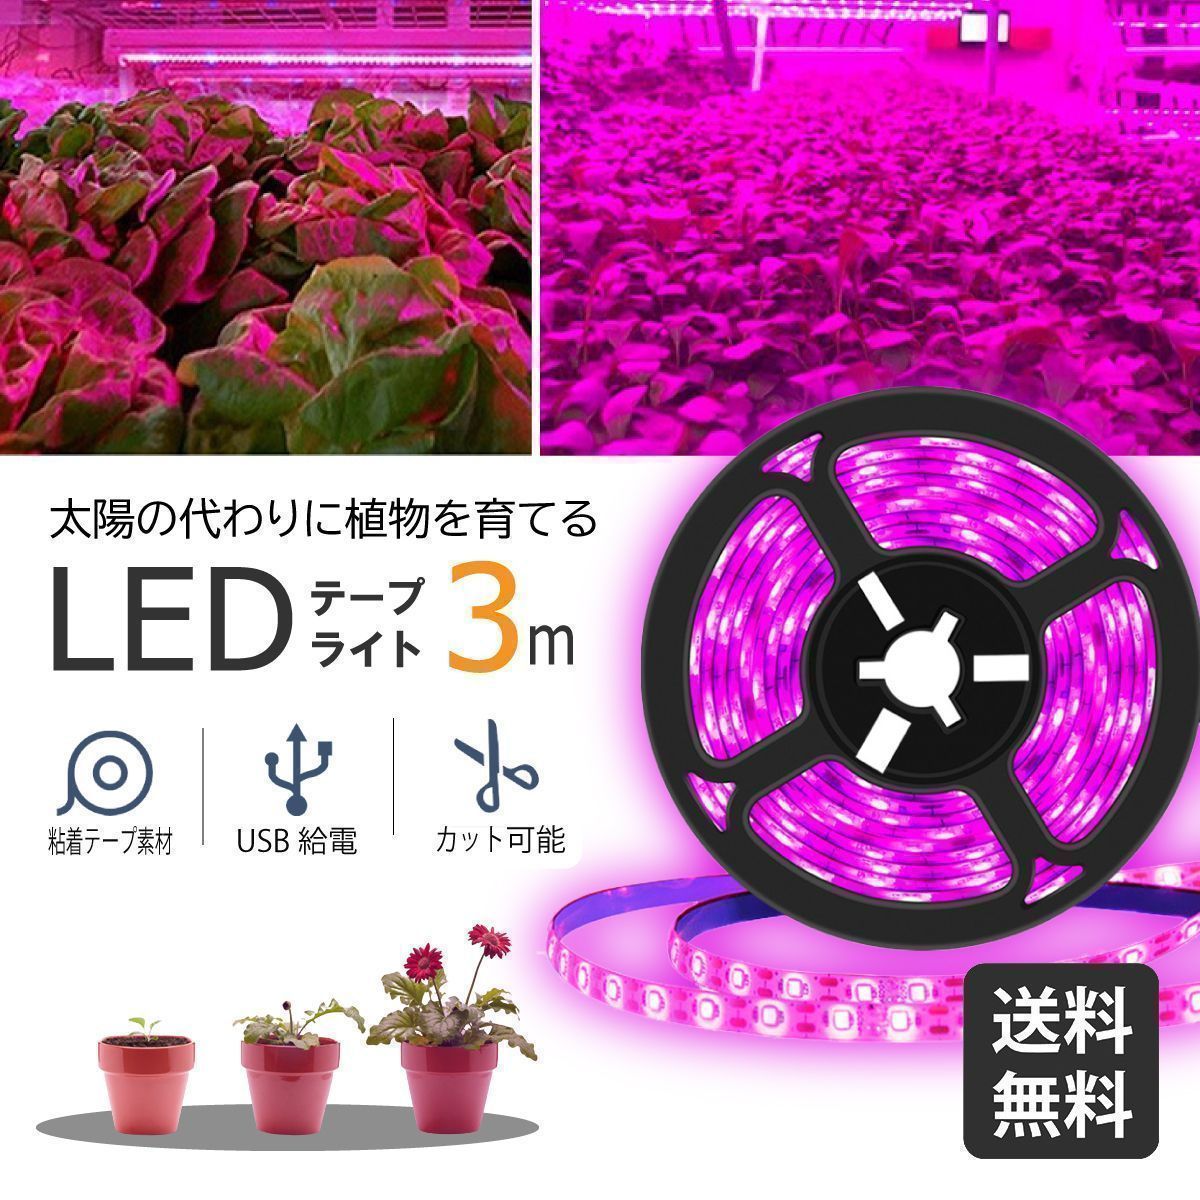 【アマテラスLED20w】観葉植物/水草育成照明